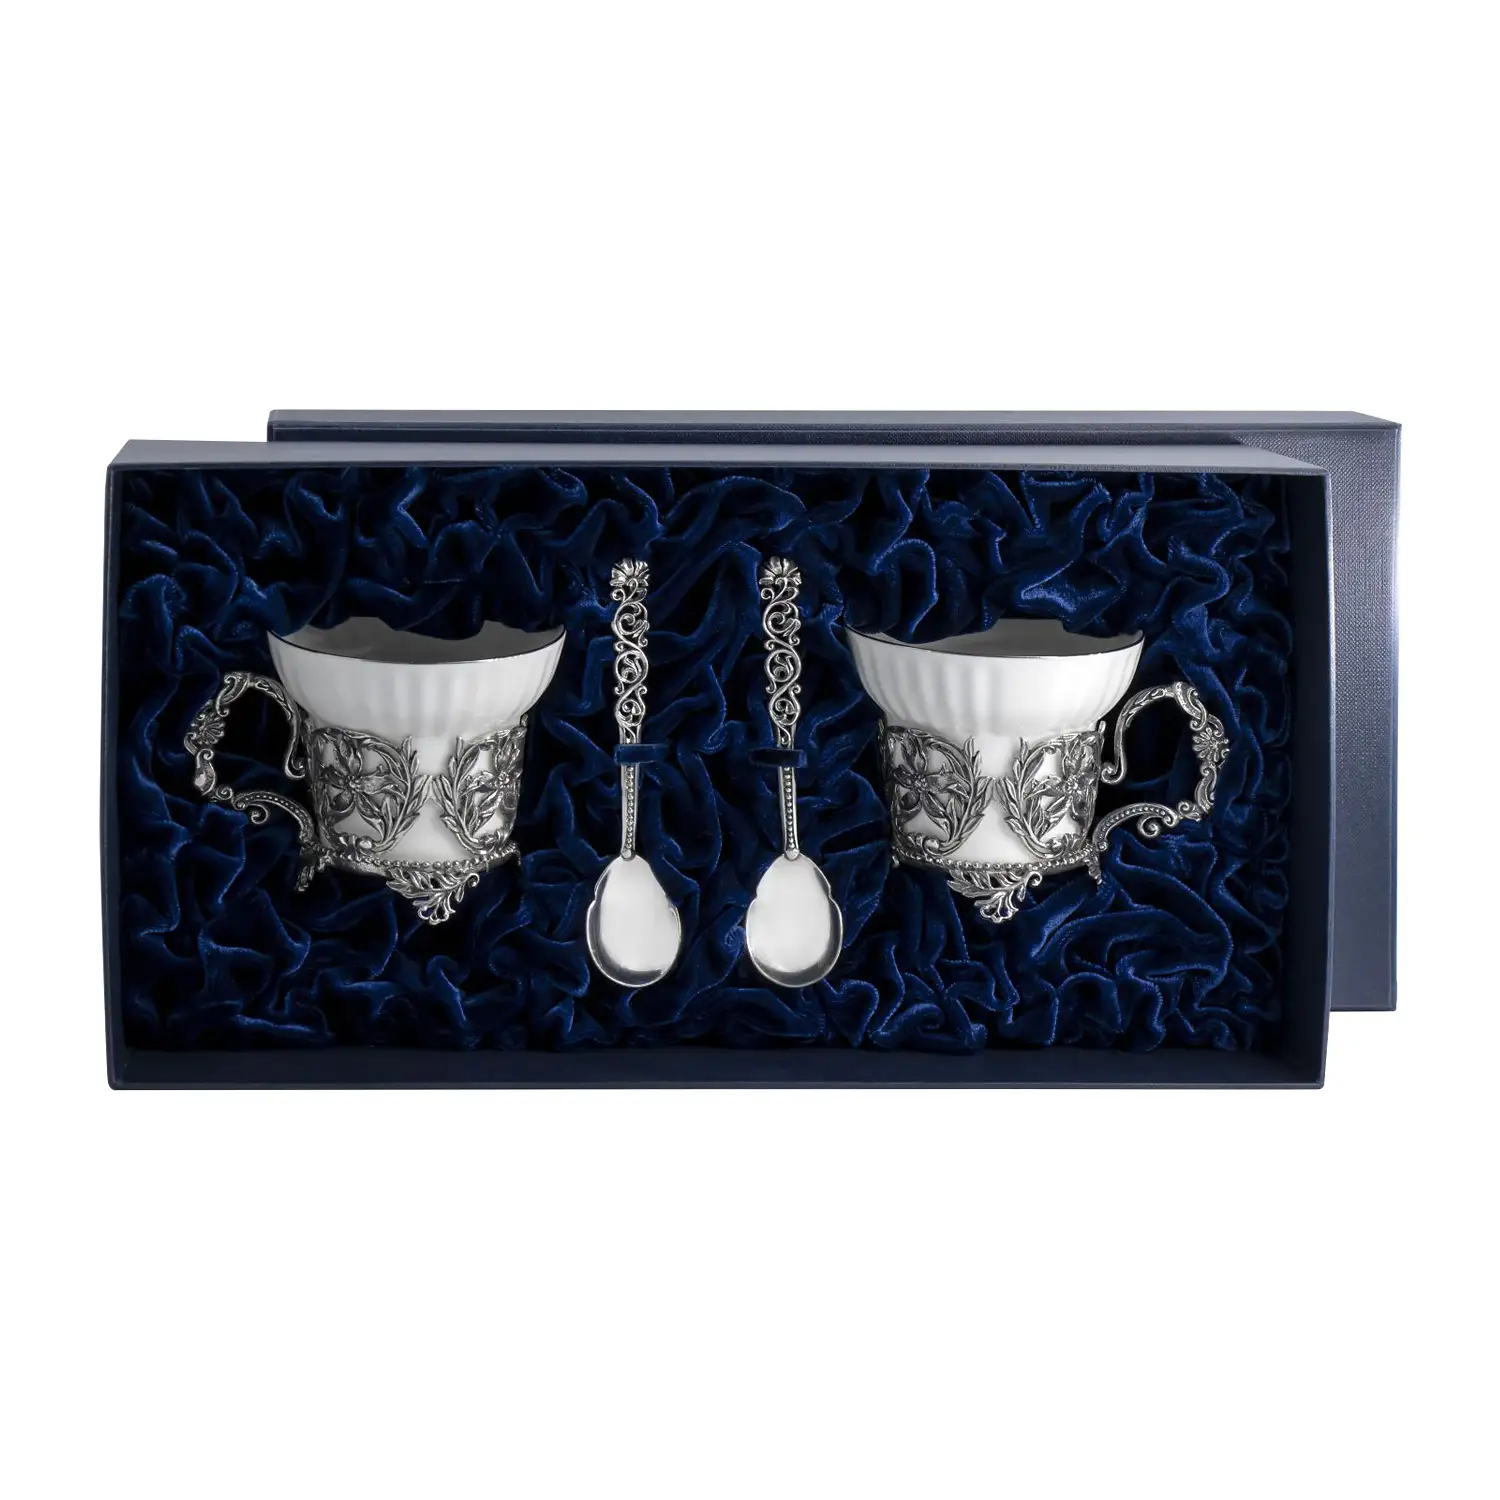 Набор чайных чашек Симфония: ложка, чашка (Серебро 925) набор чайных чашек симфония ложка чашка серебро 925